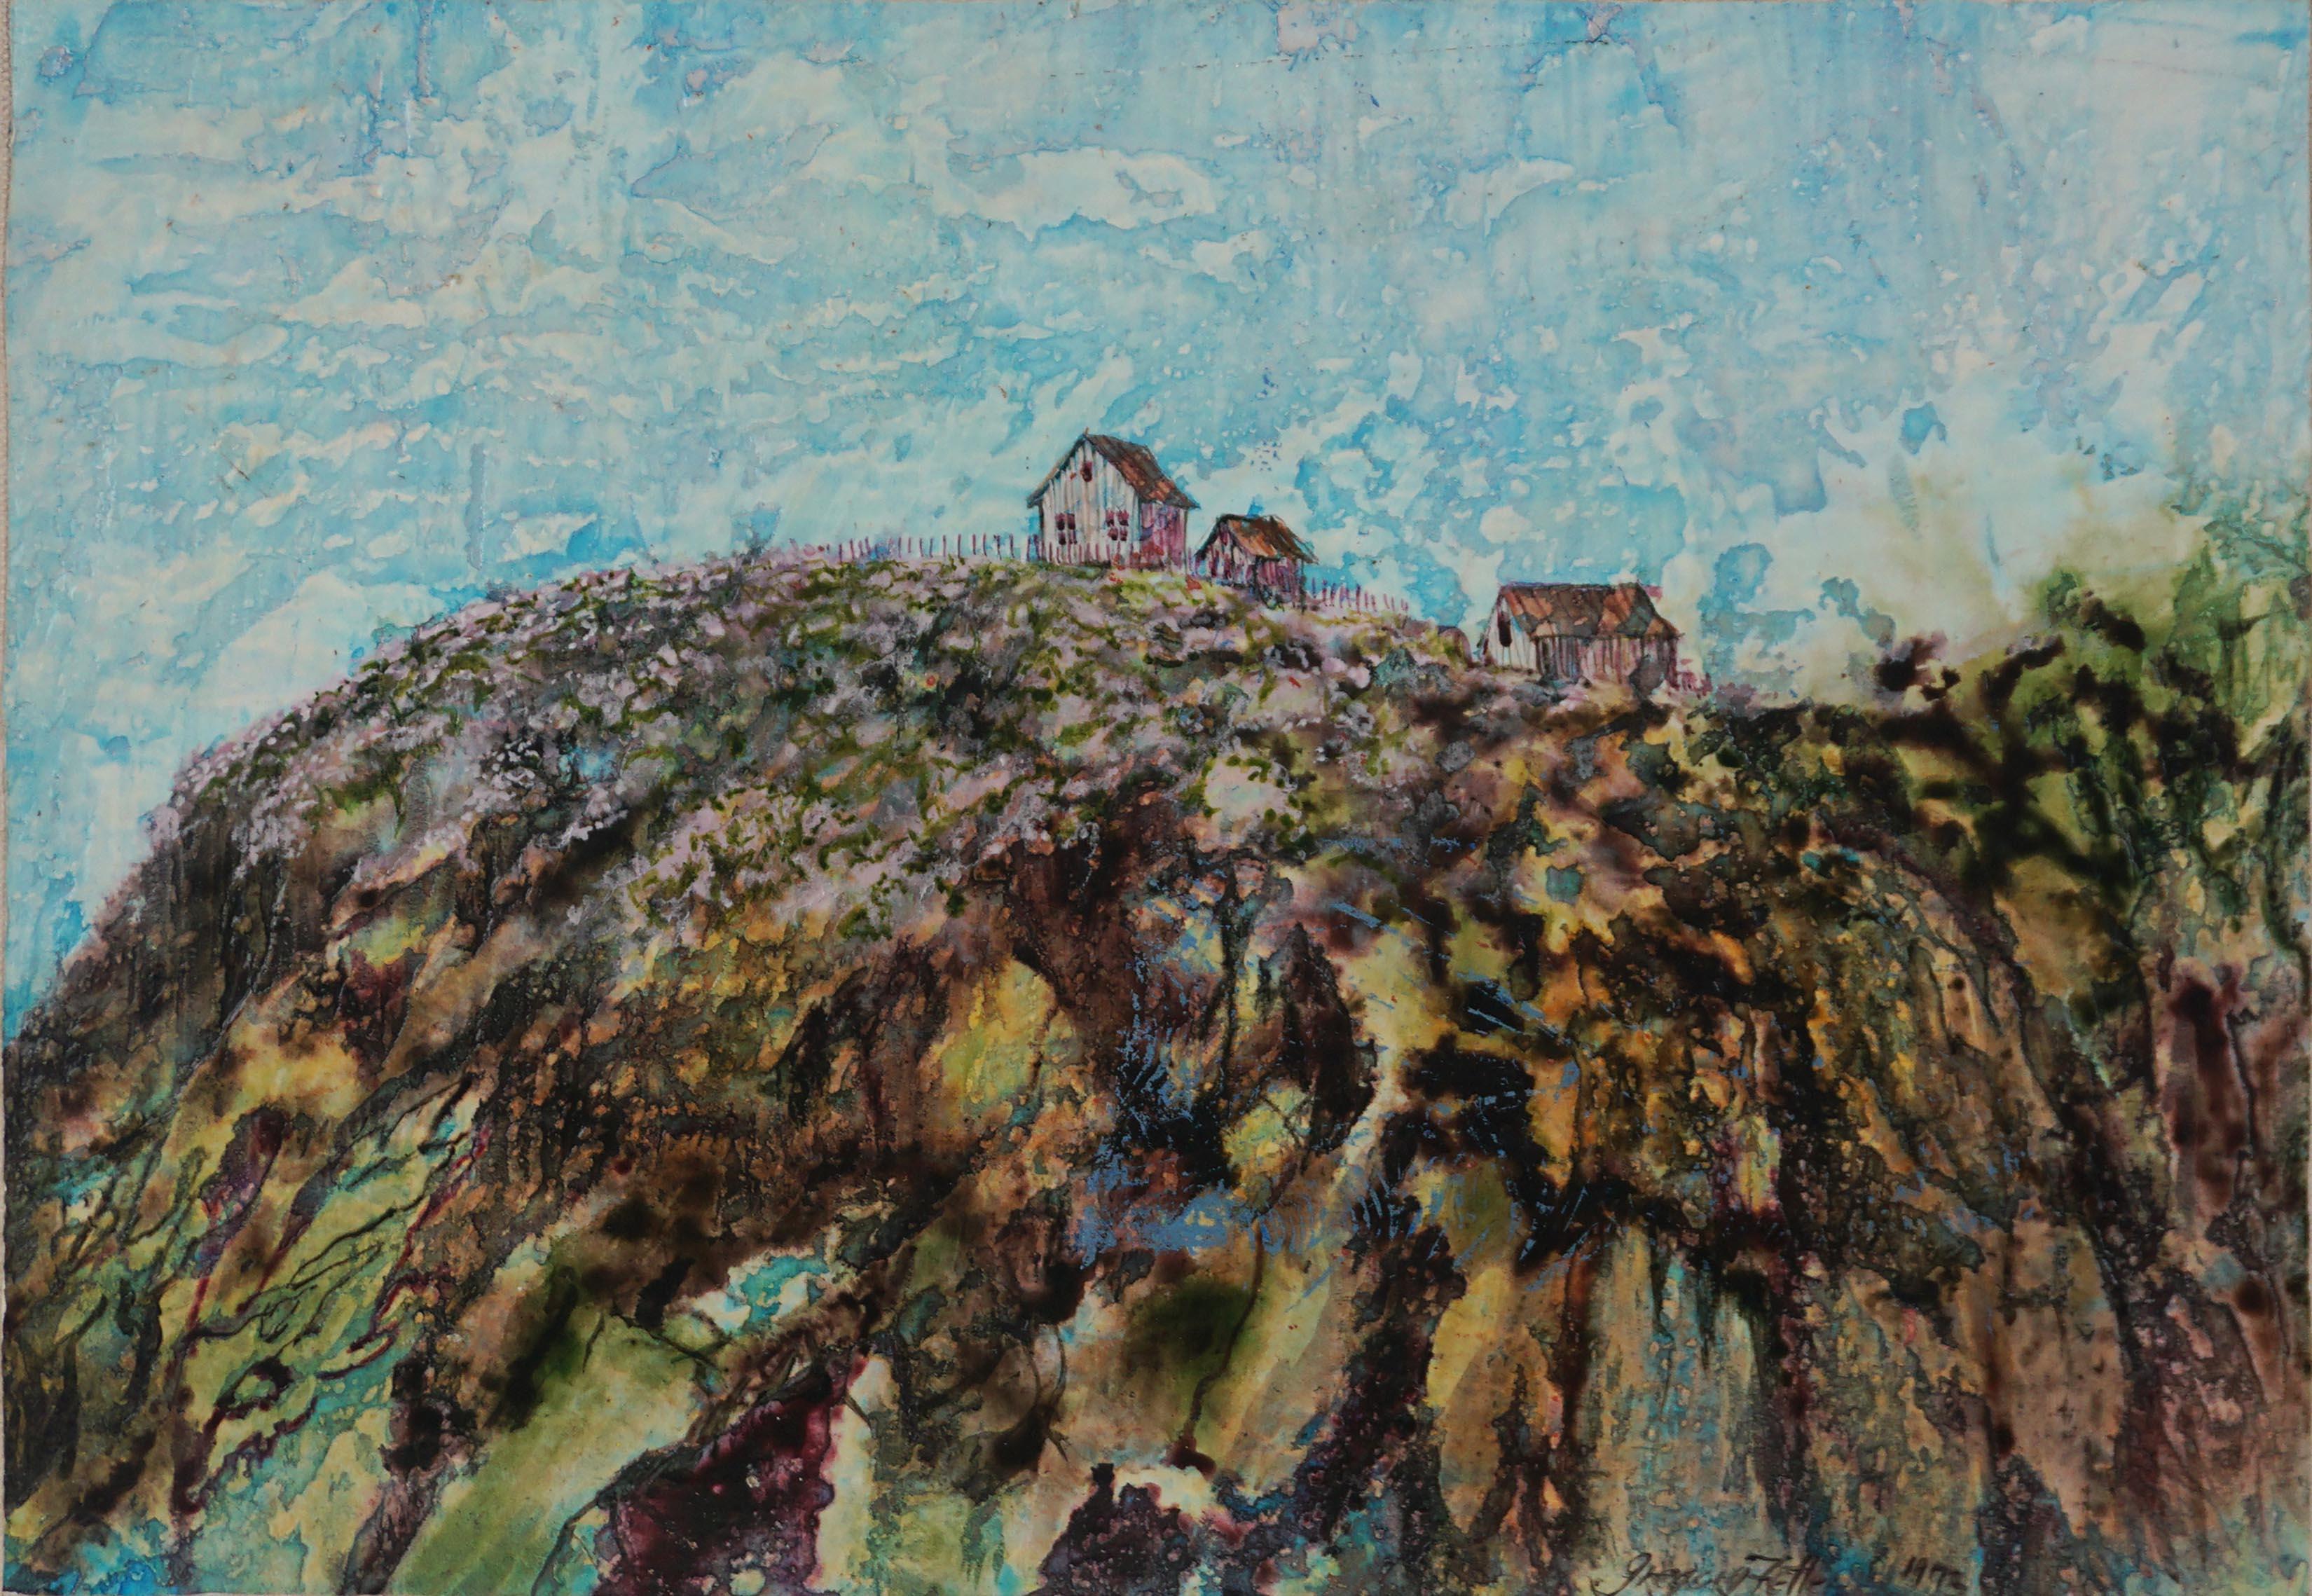 Magnifique paysage à l'encaustique de Coastal Farm par l'artiste de Californie du Nord Gregory Fetler (américain, né en 1946), 1973. Signé et daté dans le coin inférieur droit et au verso. Fixé à la toile peinte, il offre une stabilité et une